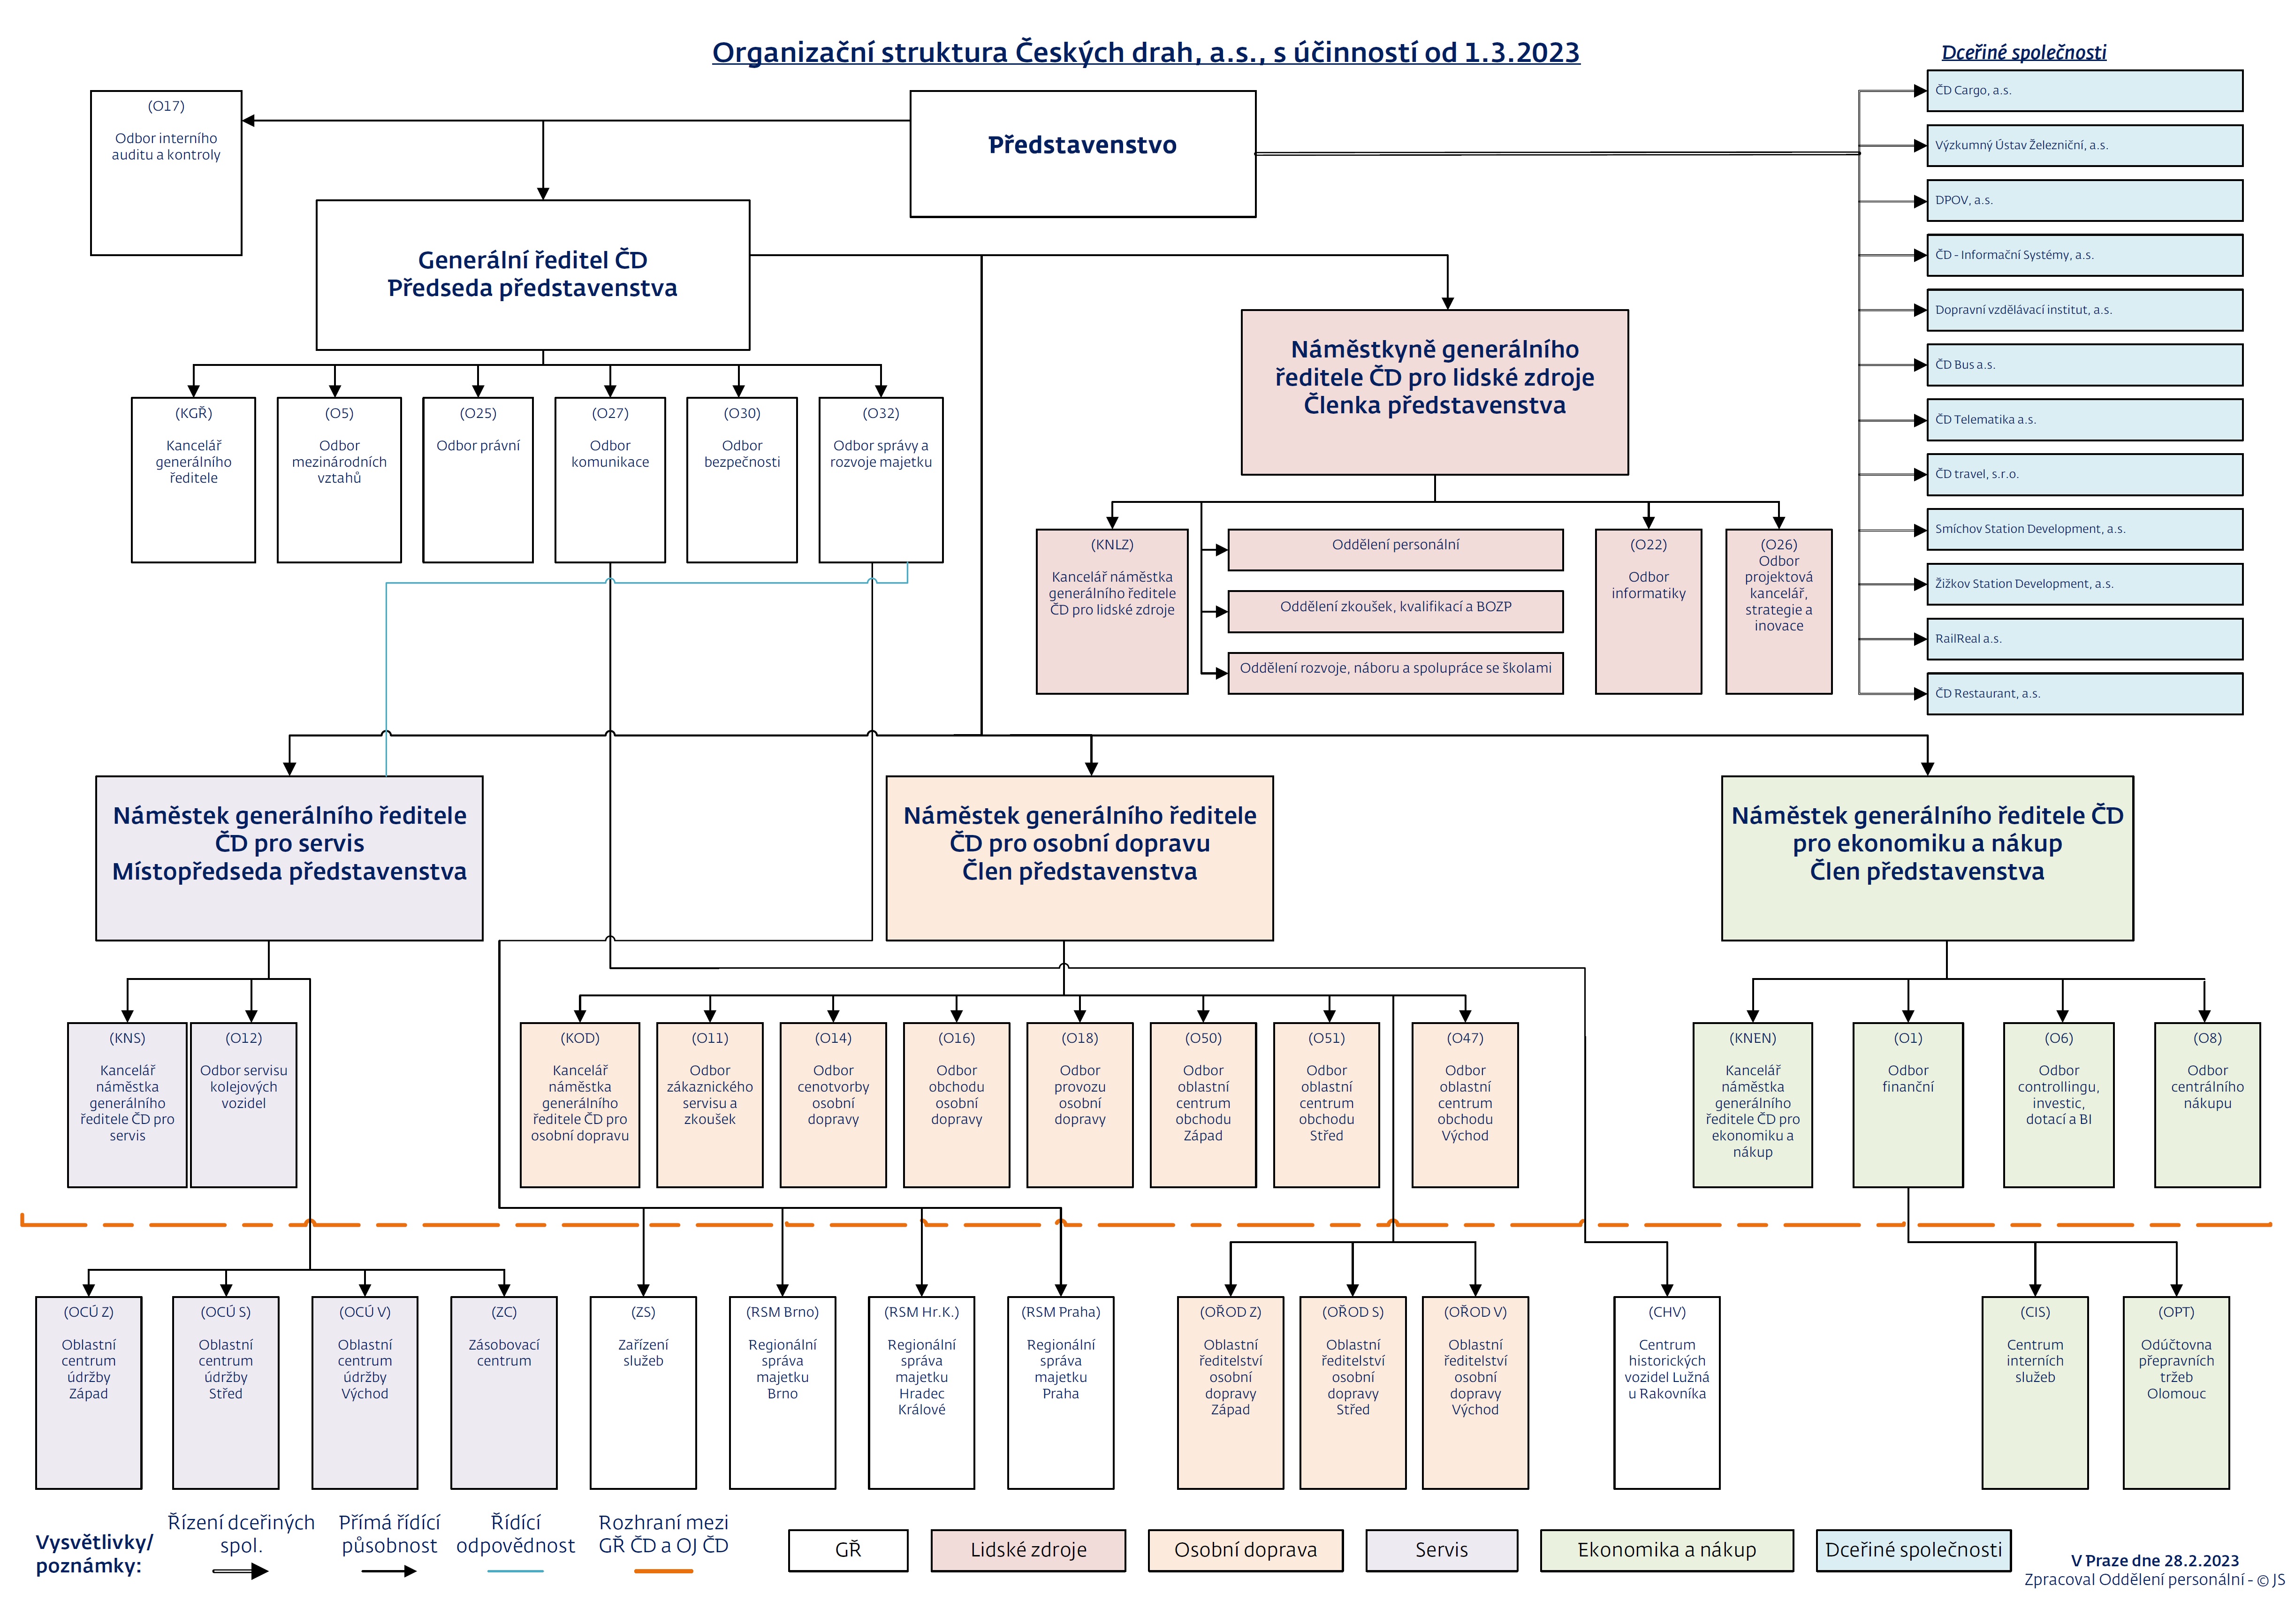 Organizační struktura ČD k 1. 3. 2023